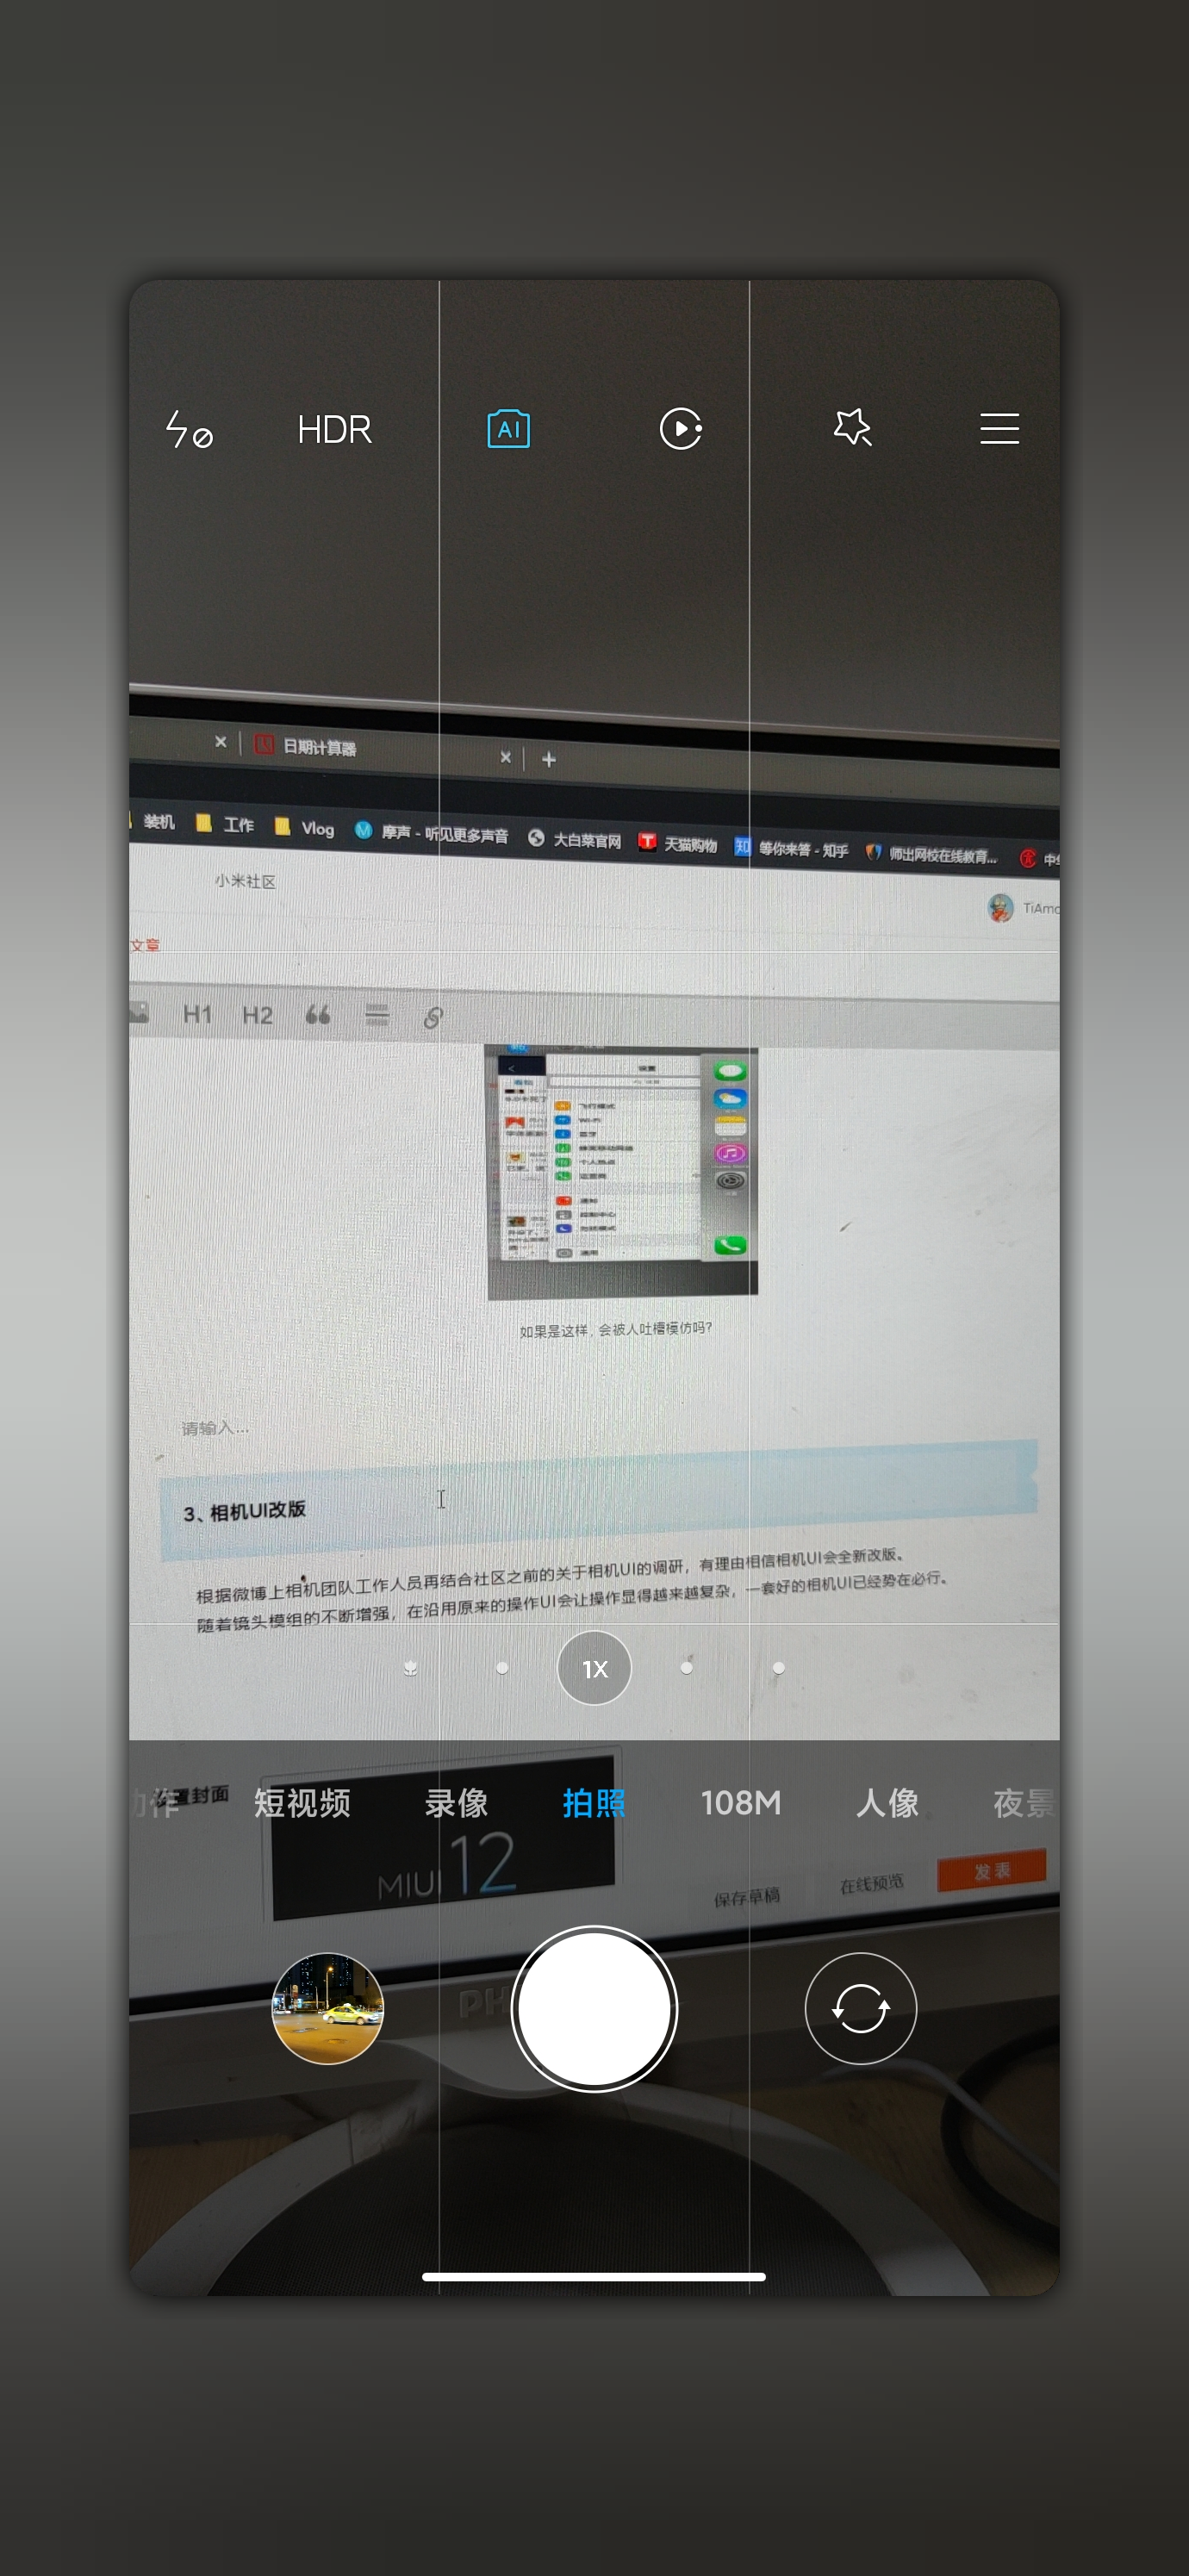 ميزات Xiaomi القادمة MIUI 12 المتوقعة 5